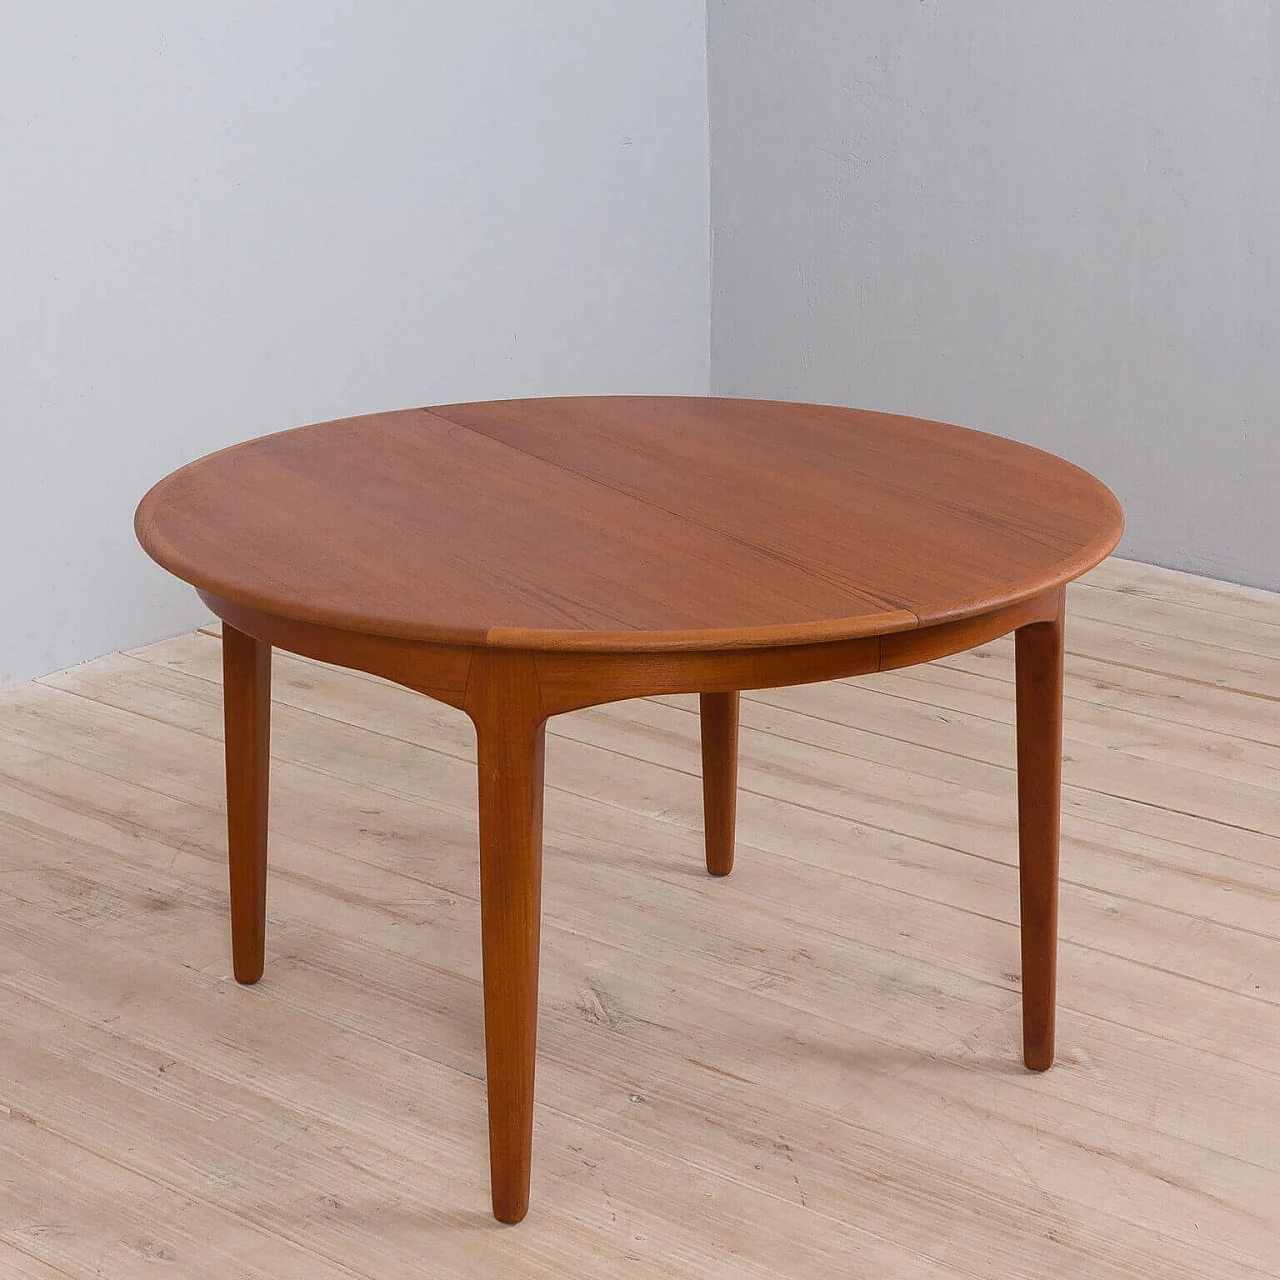 Round extendable table model 62 in teak by Henning Kjaernulf For Sorø Stolefabrik, 60s 1476119